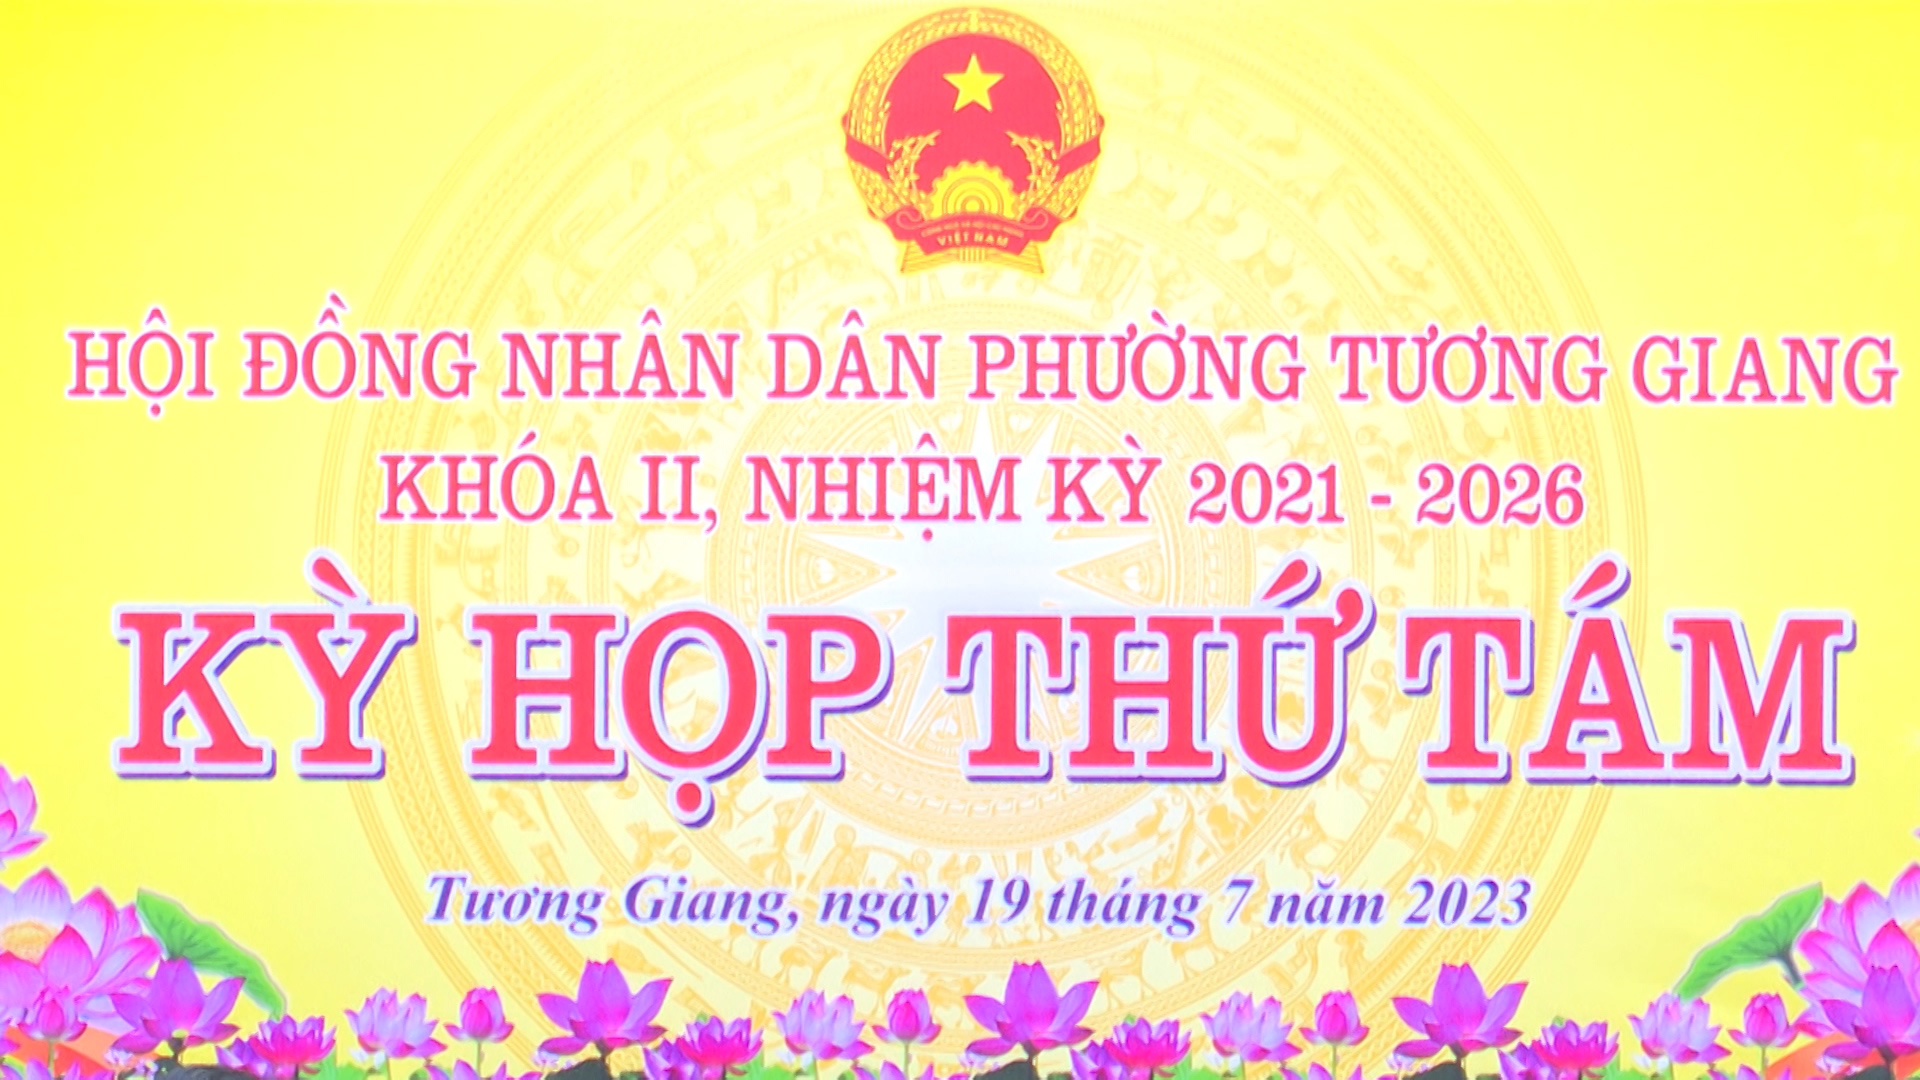 HĐND phường Tương Giang tổ chức kỳ họp thường lệ giữa năm 2023